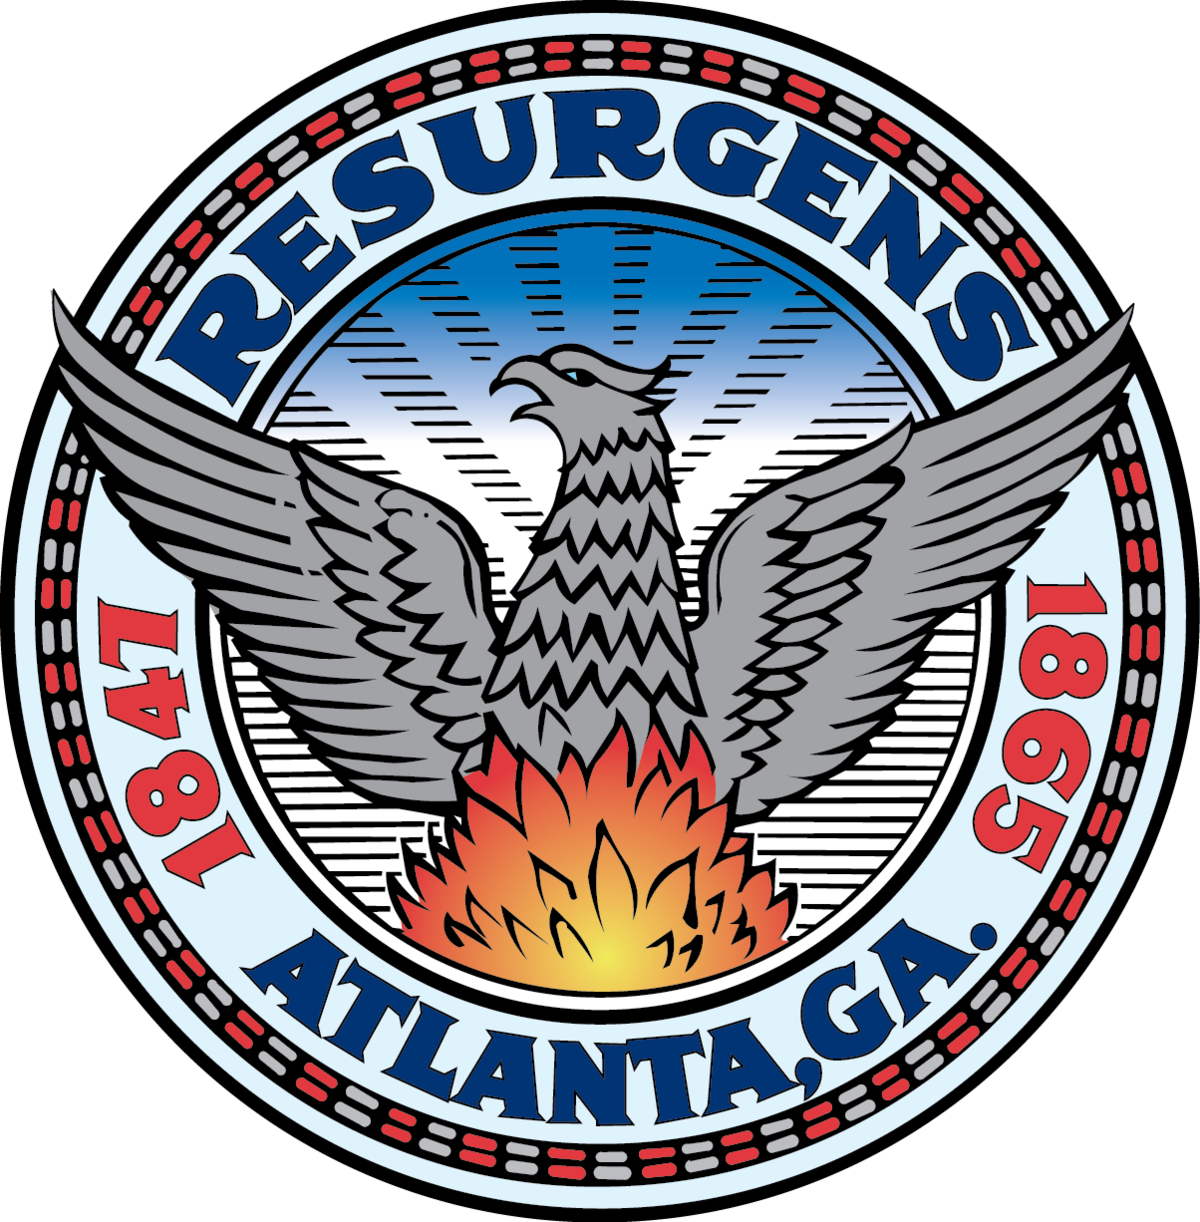 Atlanta logo and seal